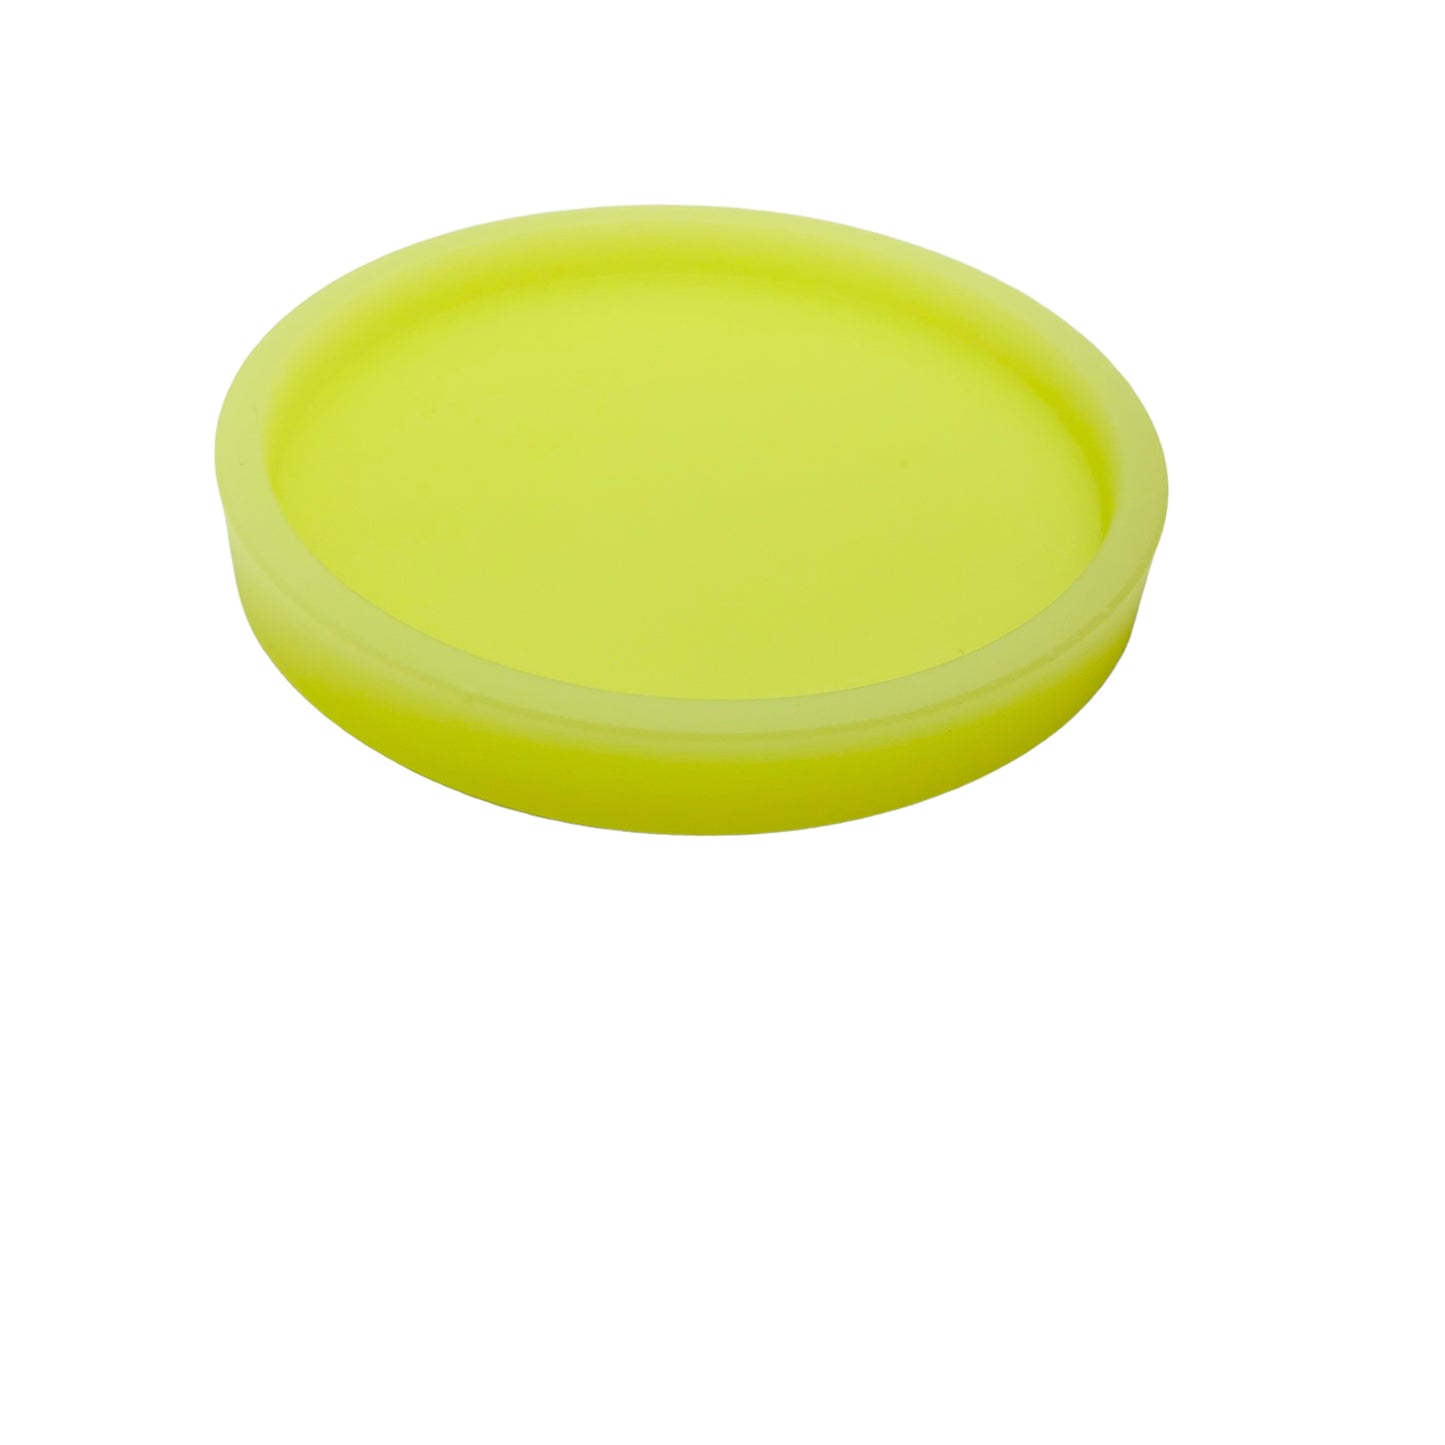 Plateau de vanité circulaire jaune néon fait à la main JenDore